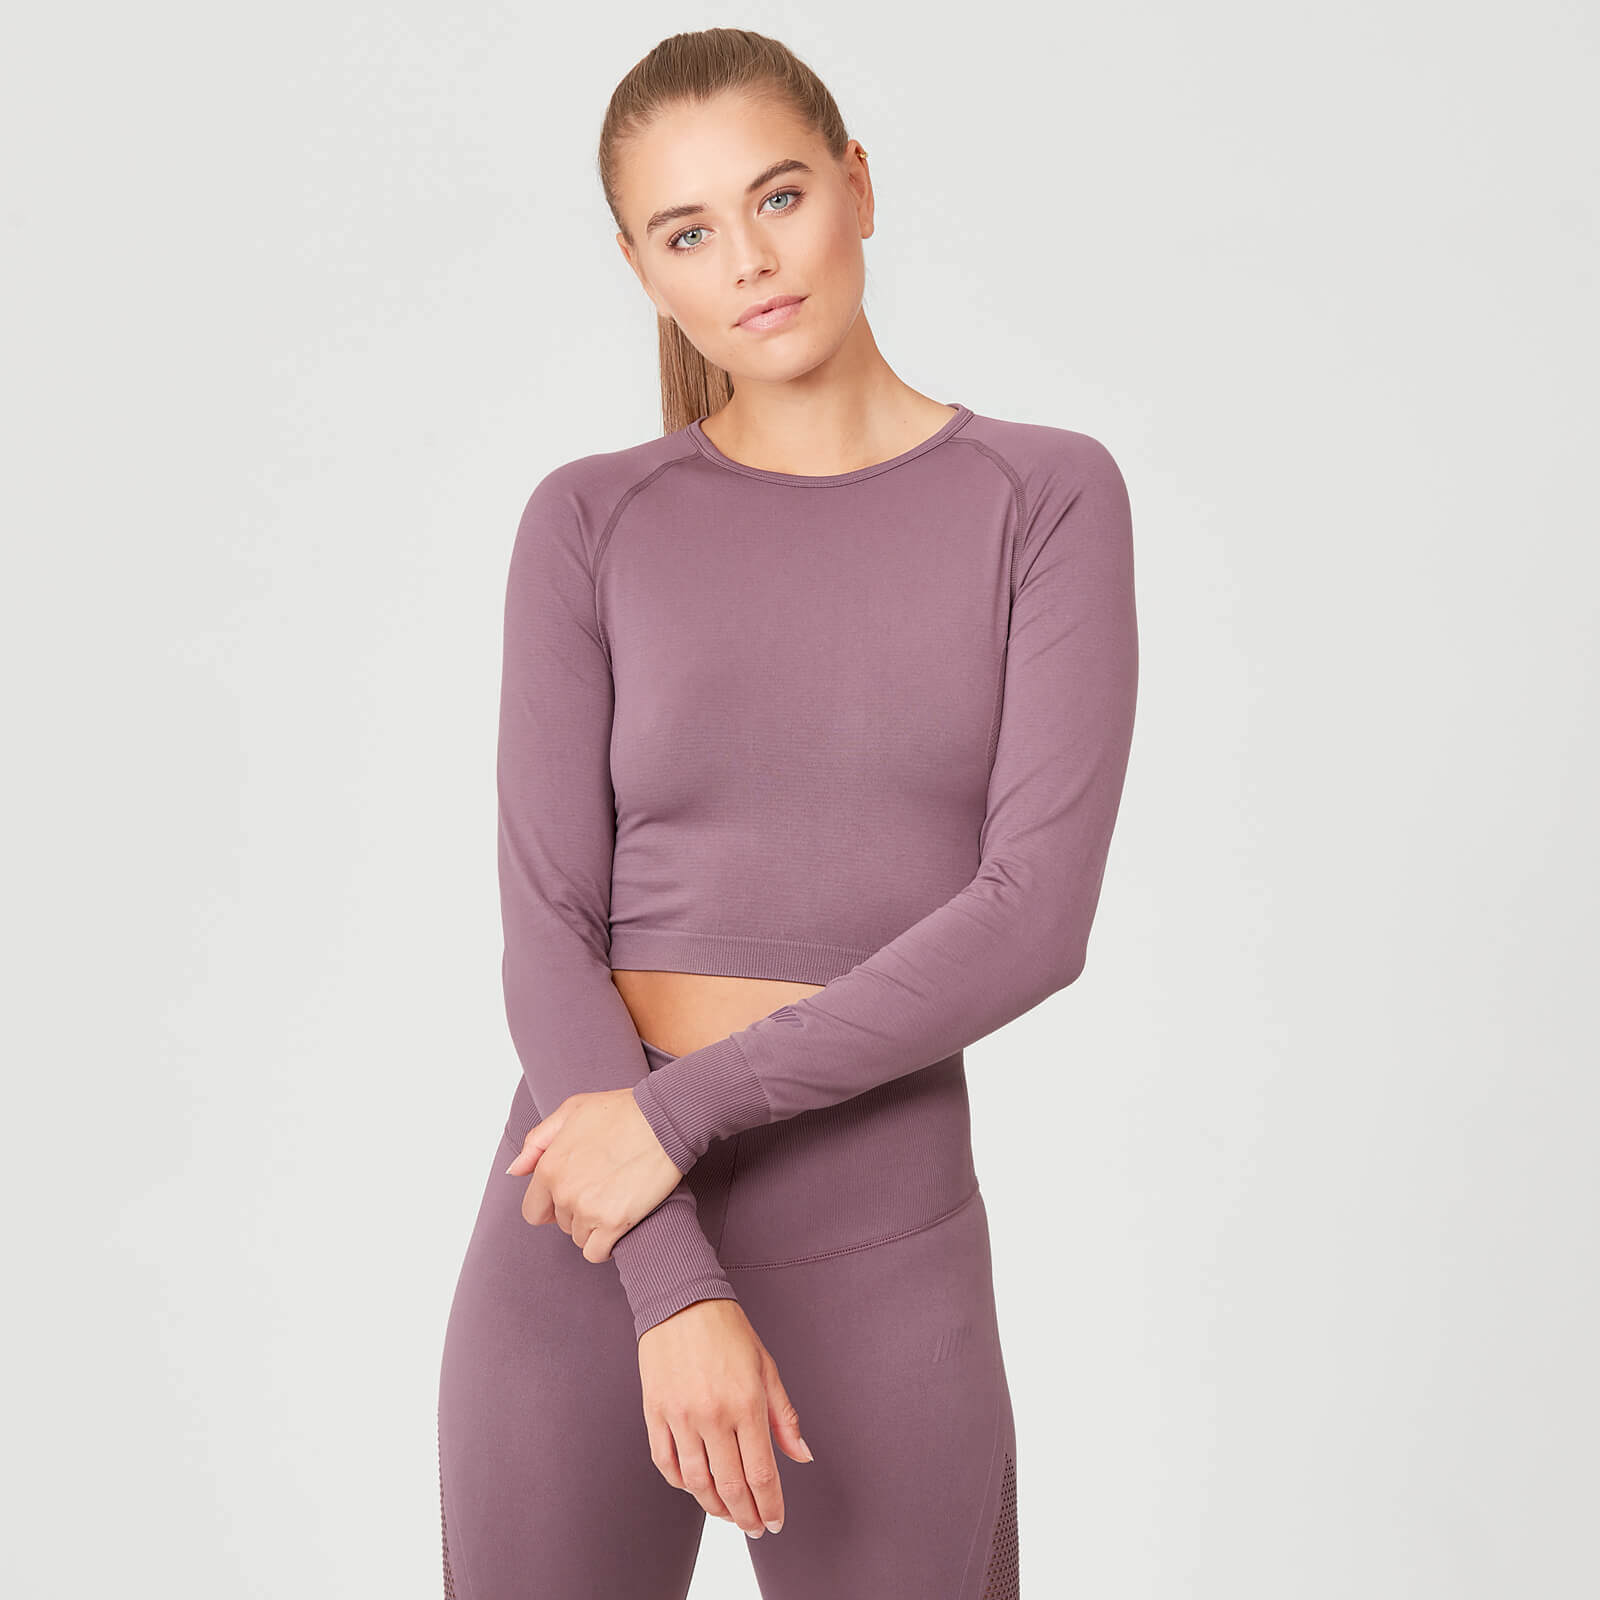 Seamless 無縫系列 女士風姿短版上衣 - 粉紫色 - L